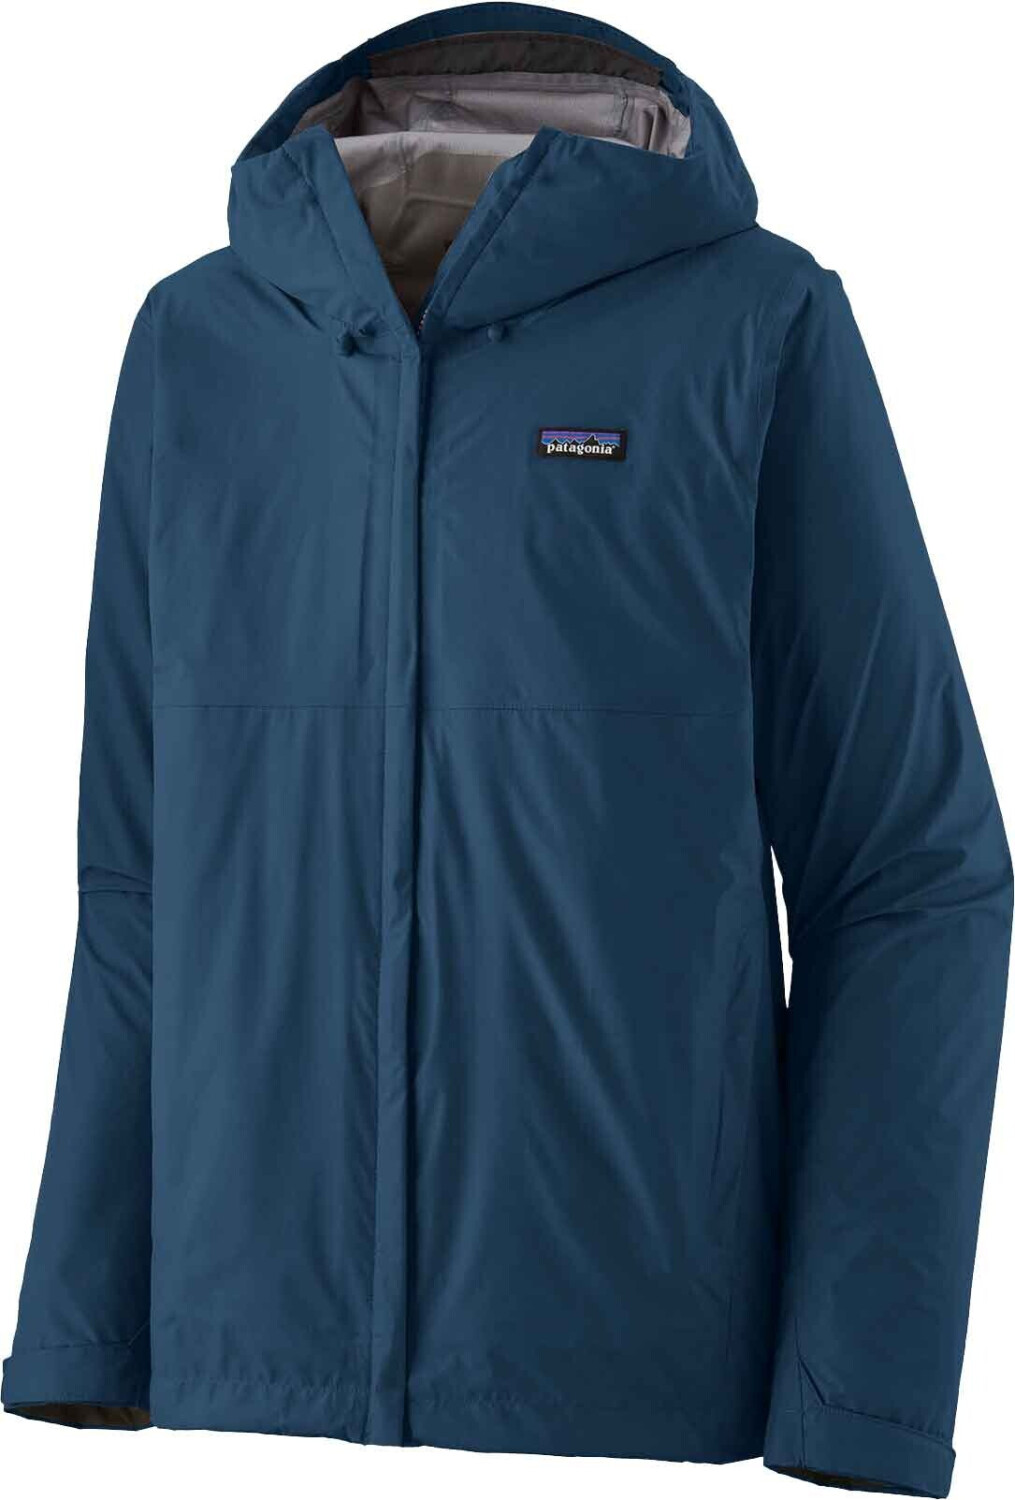 Patagonia Men's Torrentshell 3L Jacket (85241) lagom blue desde 140,00 €